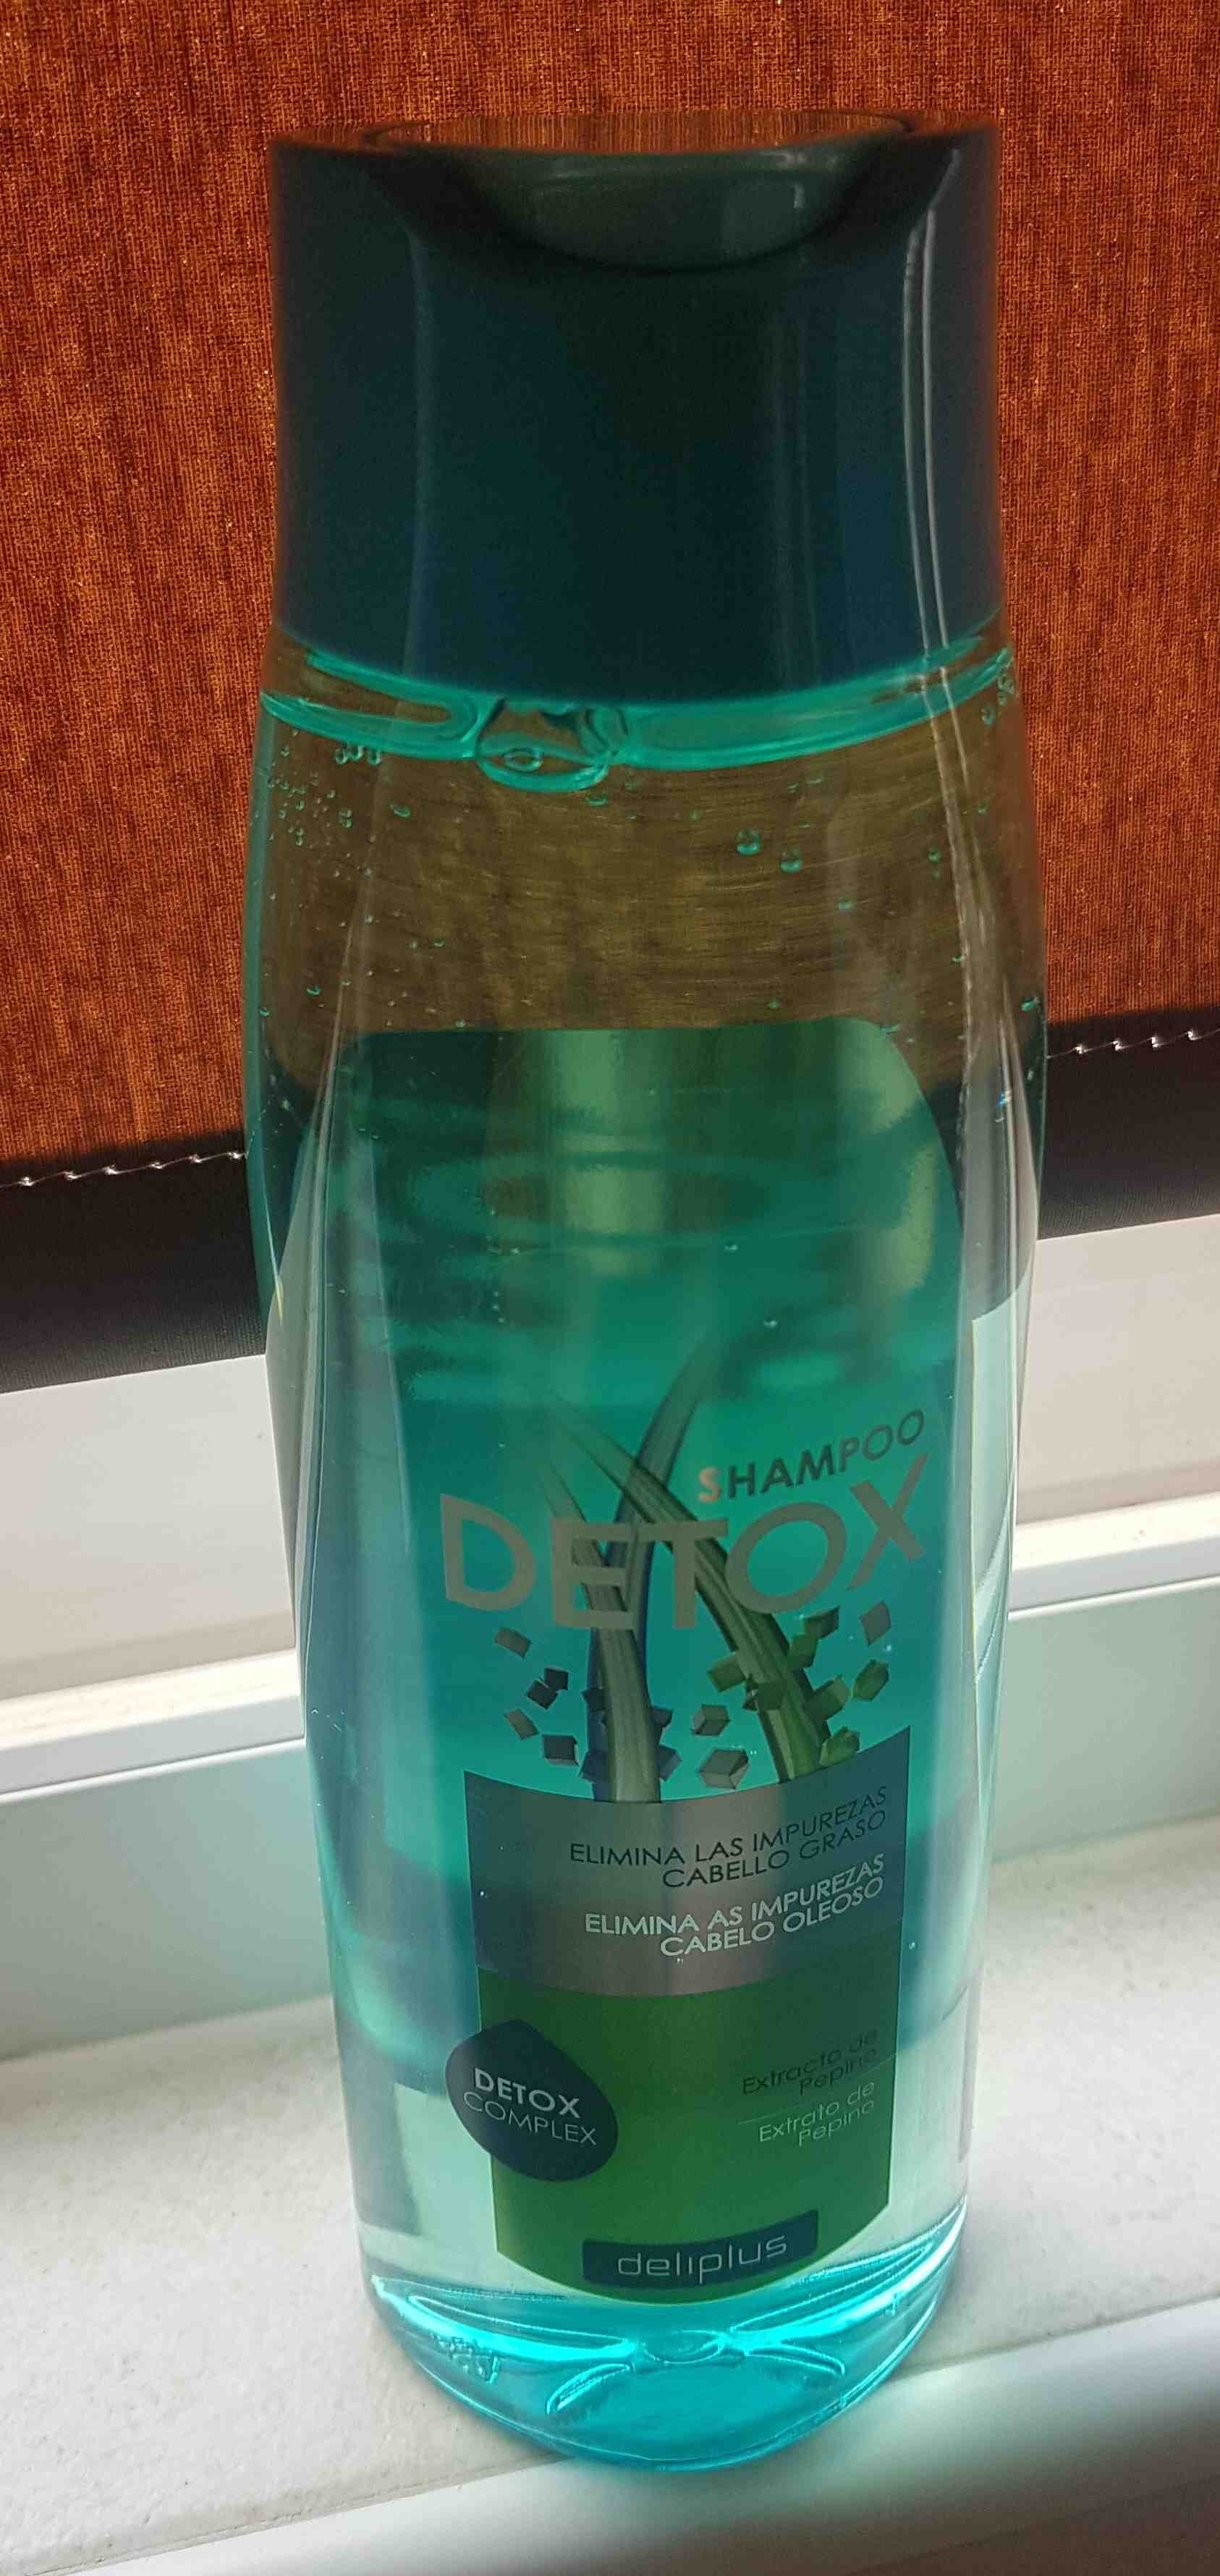 shampoo detox deliplus - Produit - en